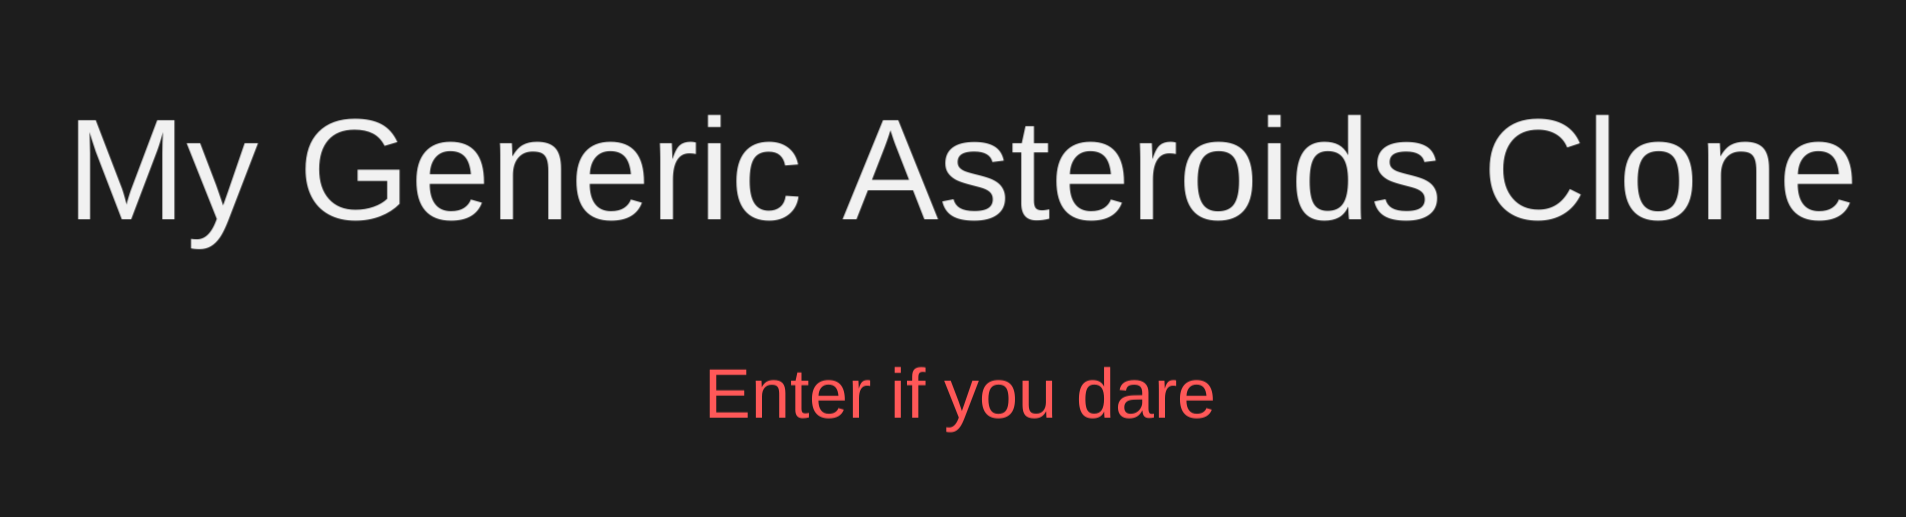 My Generic Asteroids Clone